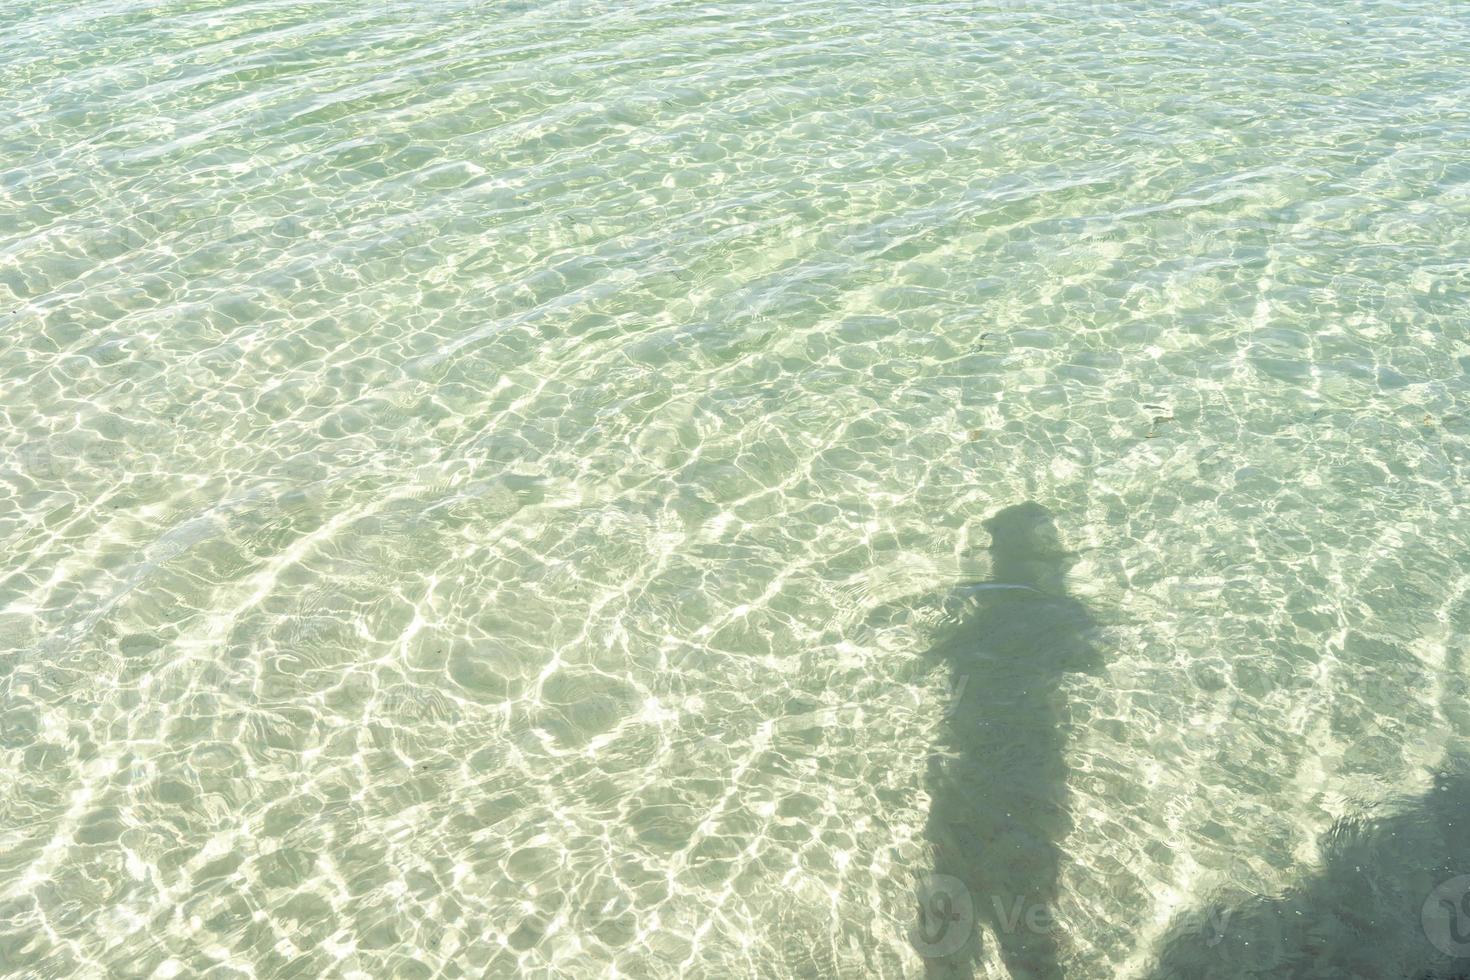 sombra de persona en el mar. sombra de un fotógrafo tomando fotos de la hermosa ola en la playa